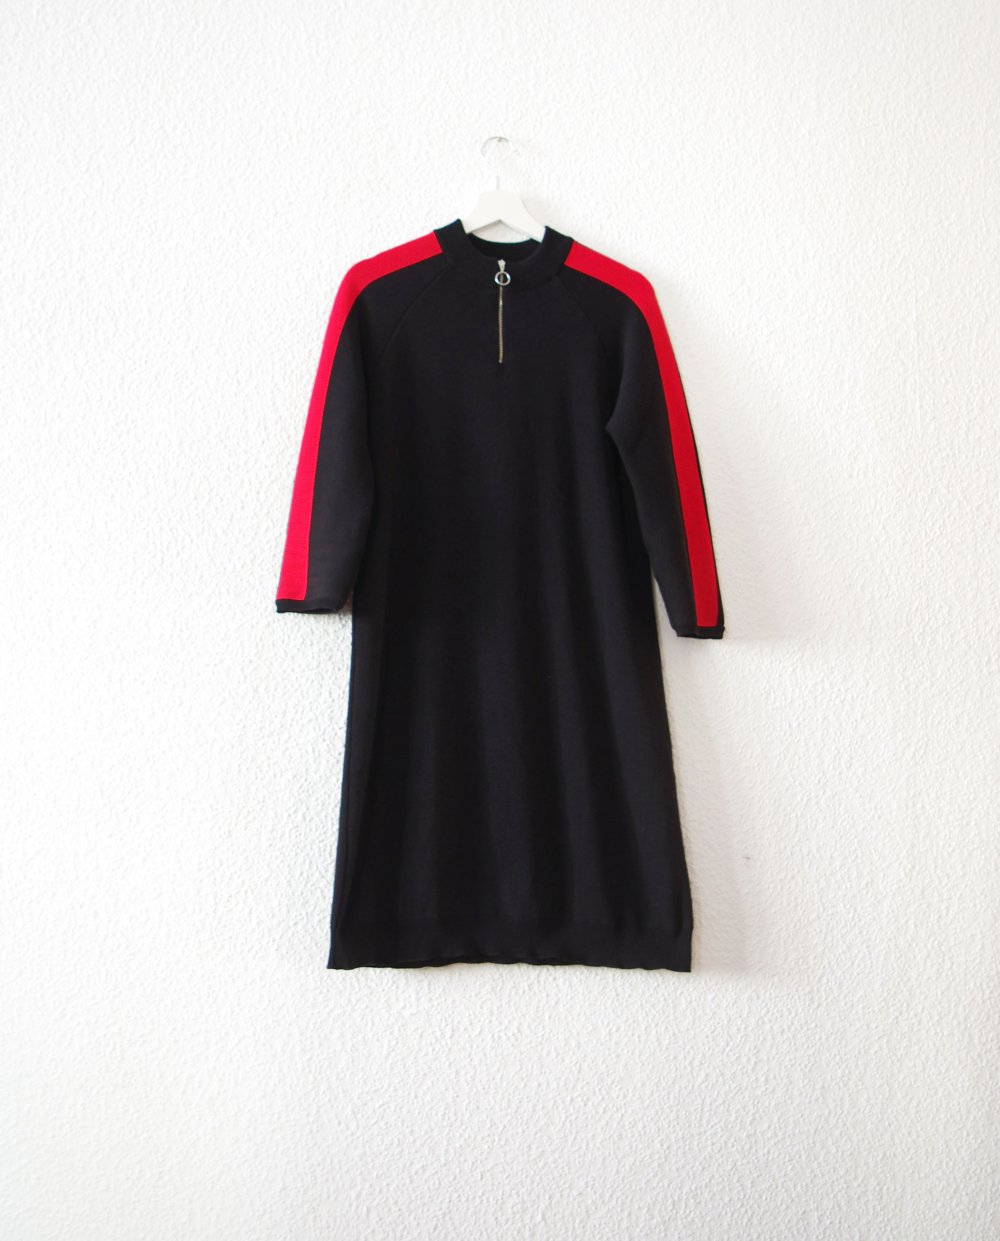 Sportliches Twintip Track Kleid Gr. L M schwarz Streifen rot weiß 